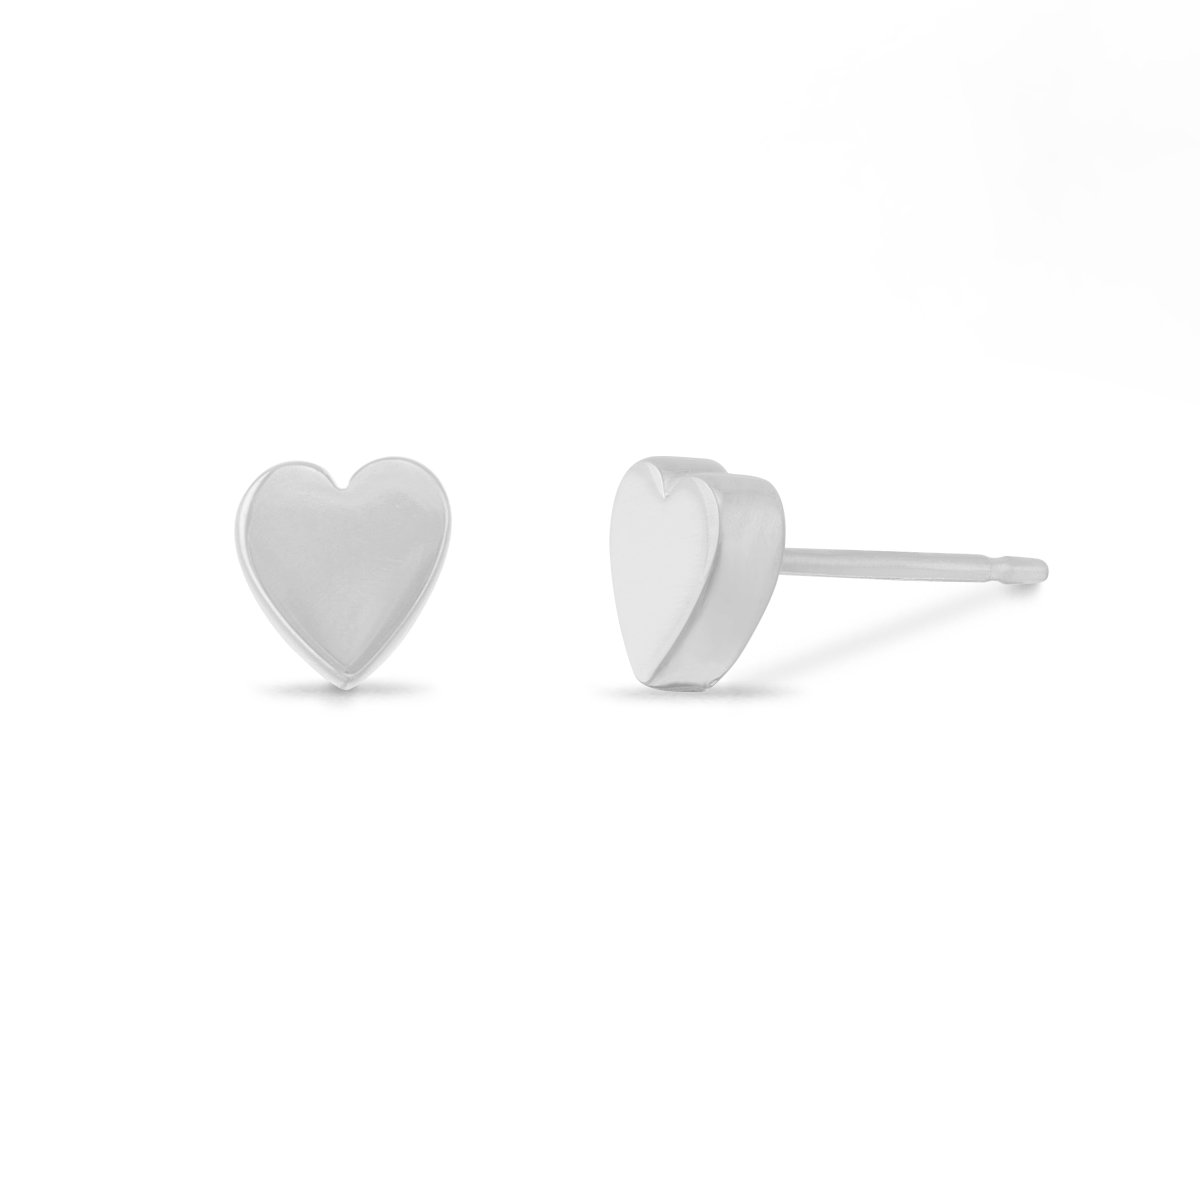 Boma Jewelry Earrings Sterling Silver Belle Heart Studs